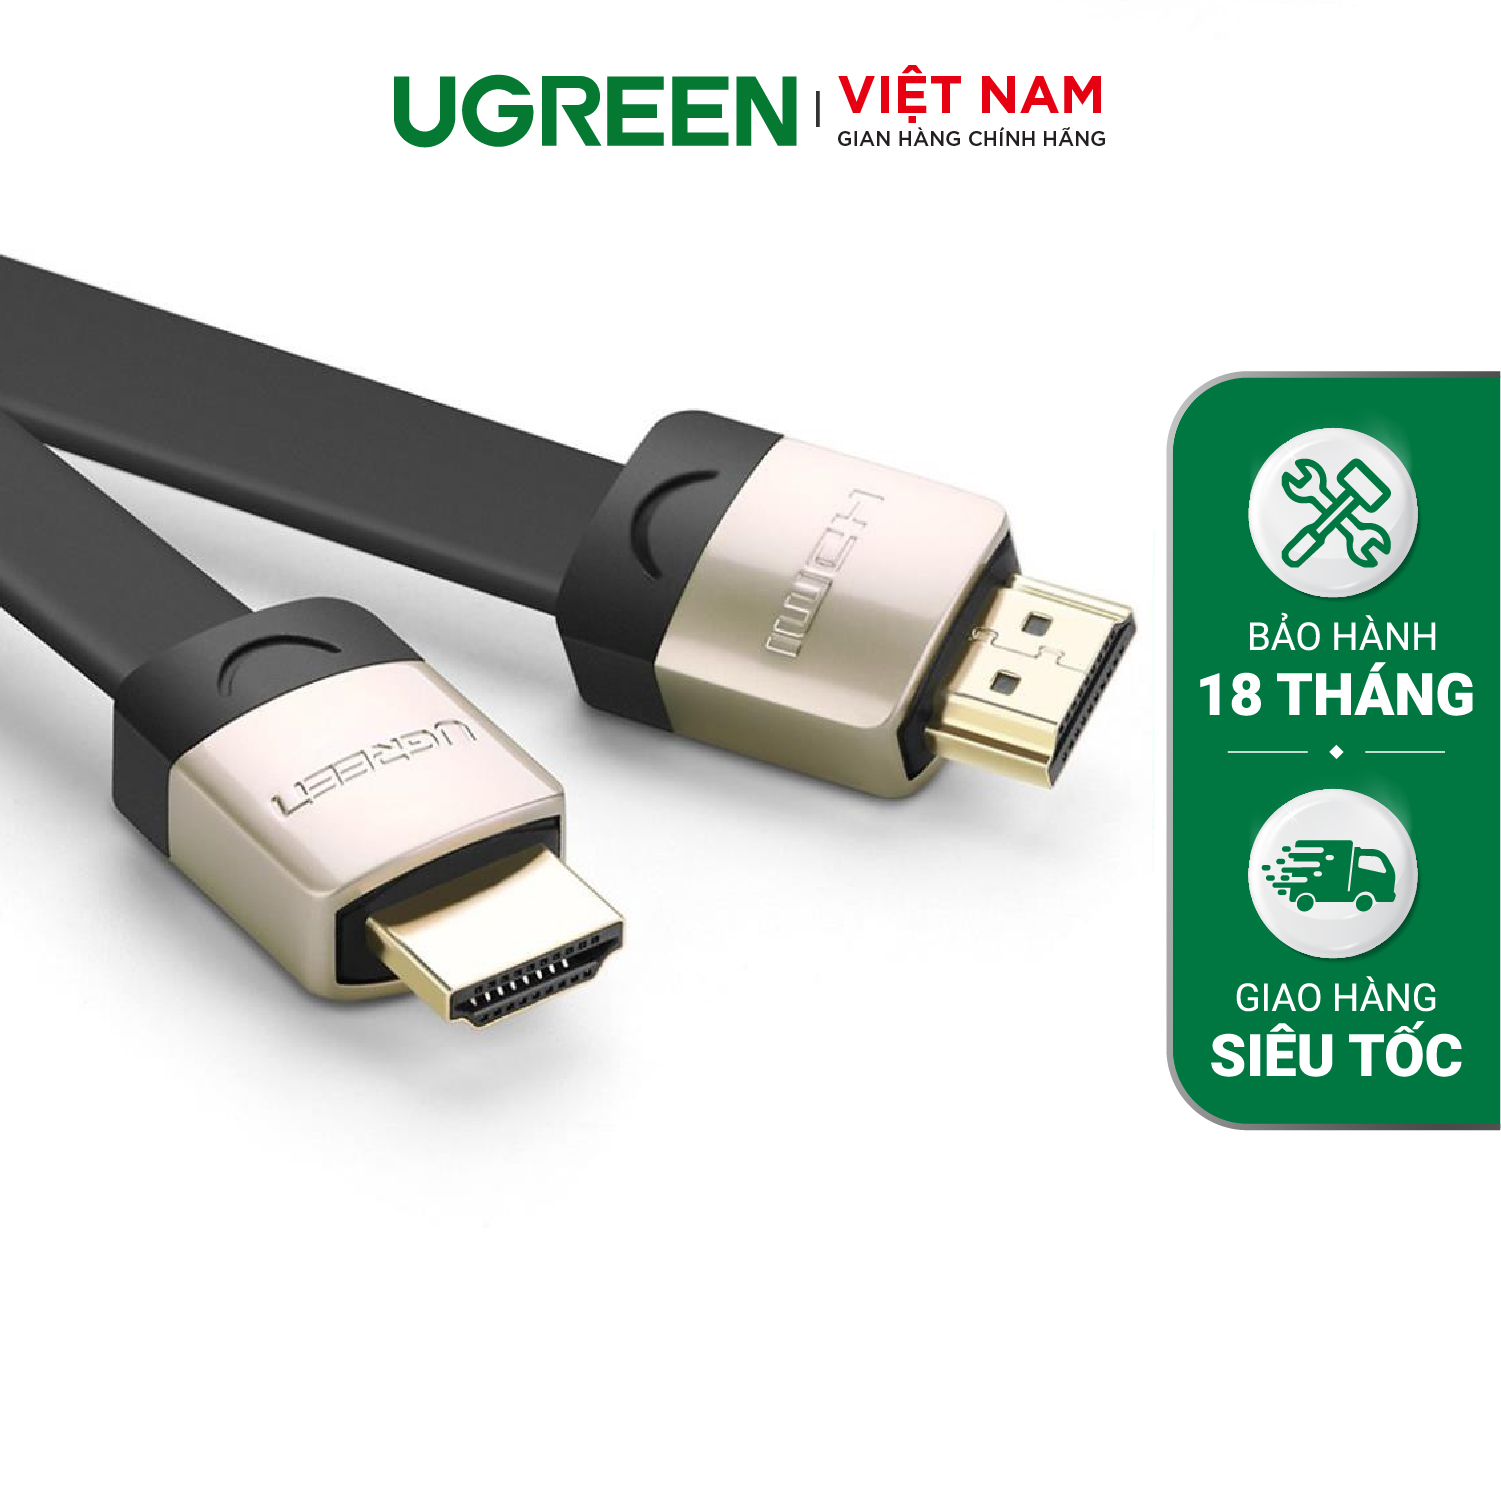 Cáp HDMI UGREEN HD12 -Dây dạng dây dẹt hỗ trợ 2K*4K hình ảnh 3D dài 1-5M – Hàng phân phối chính hãng – Bảo hành 18 tháng 1 đổi 1